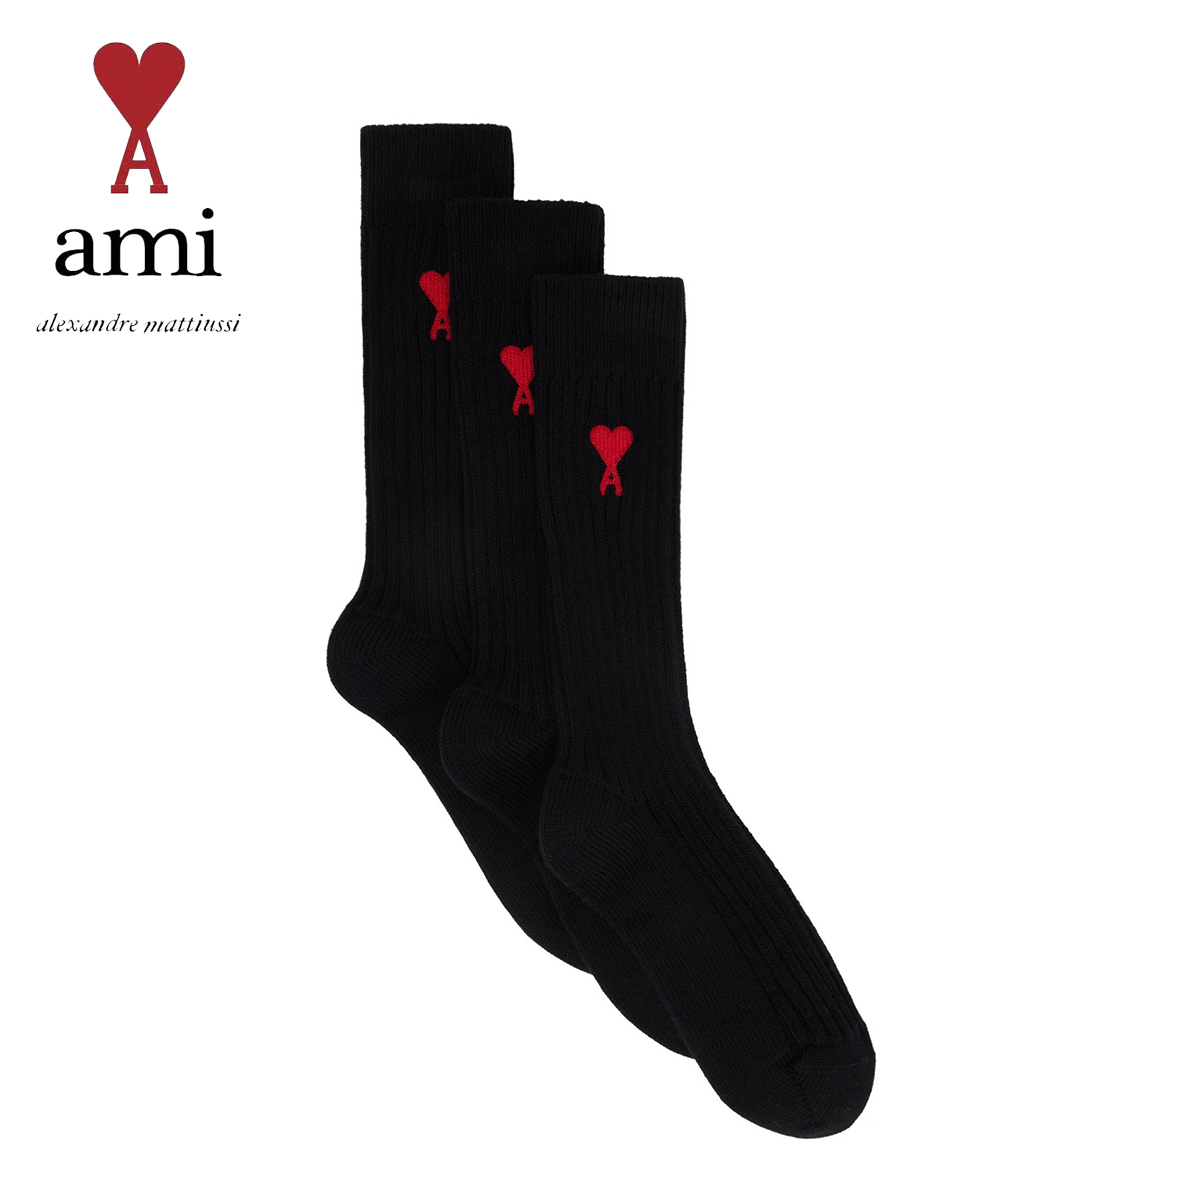 【楽天市場】AMI Paris ソックス アミ パリス AMI ALEXANDRE MATTIUSSI 3足セット BLACK 靴下 くつした